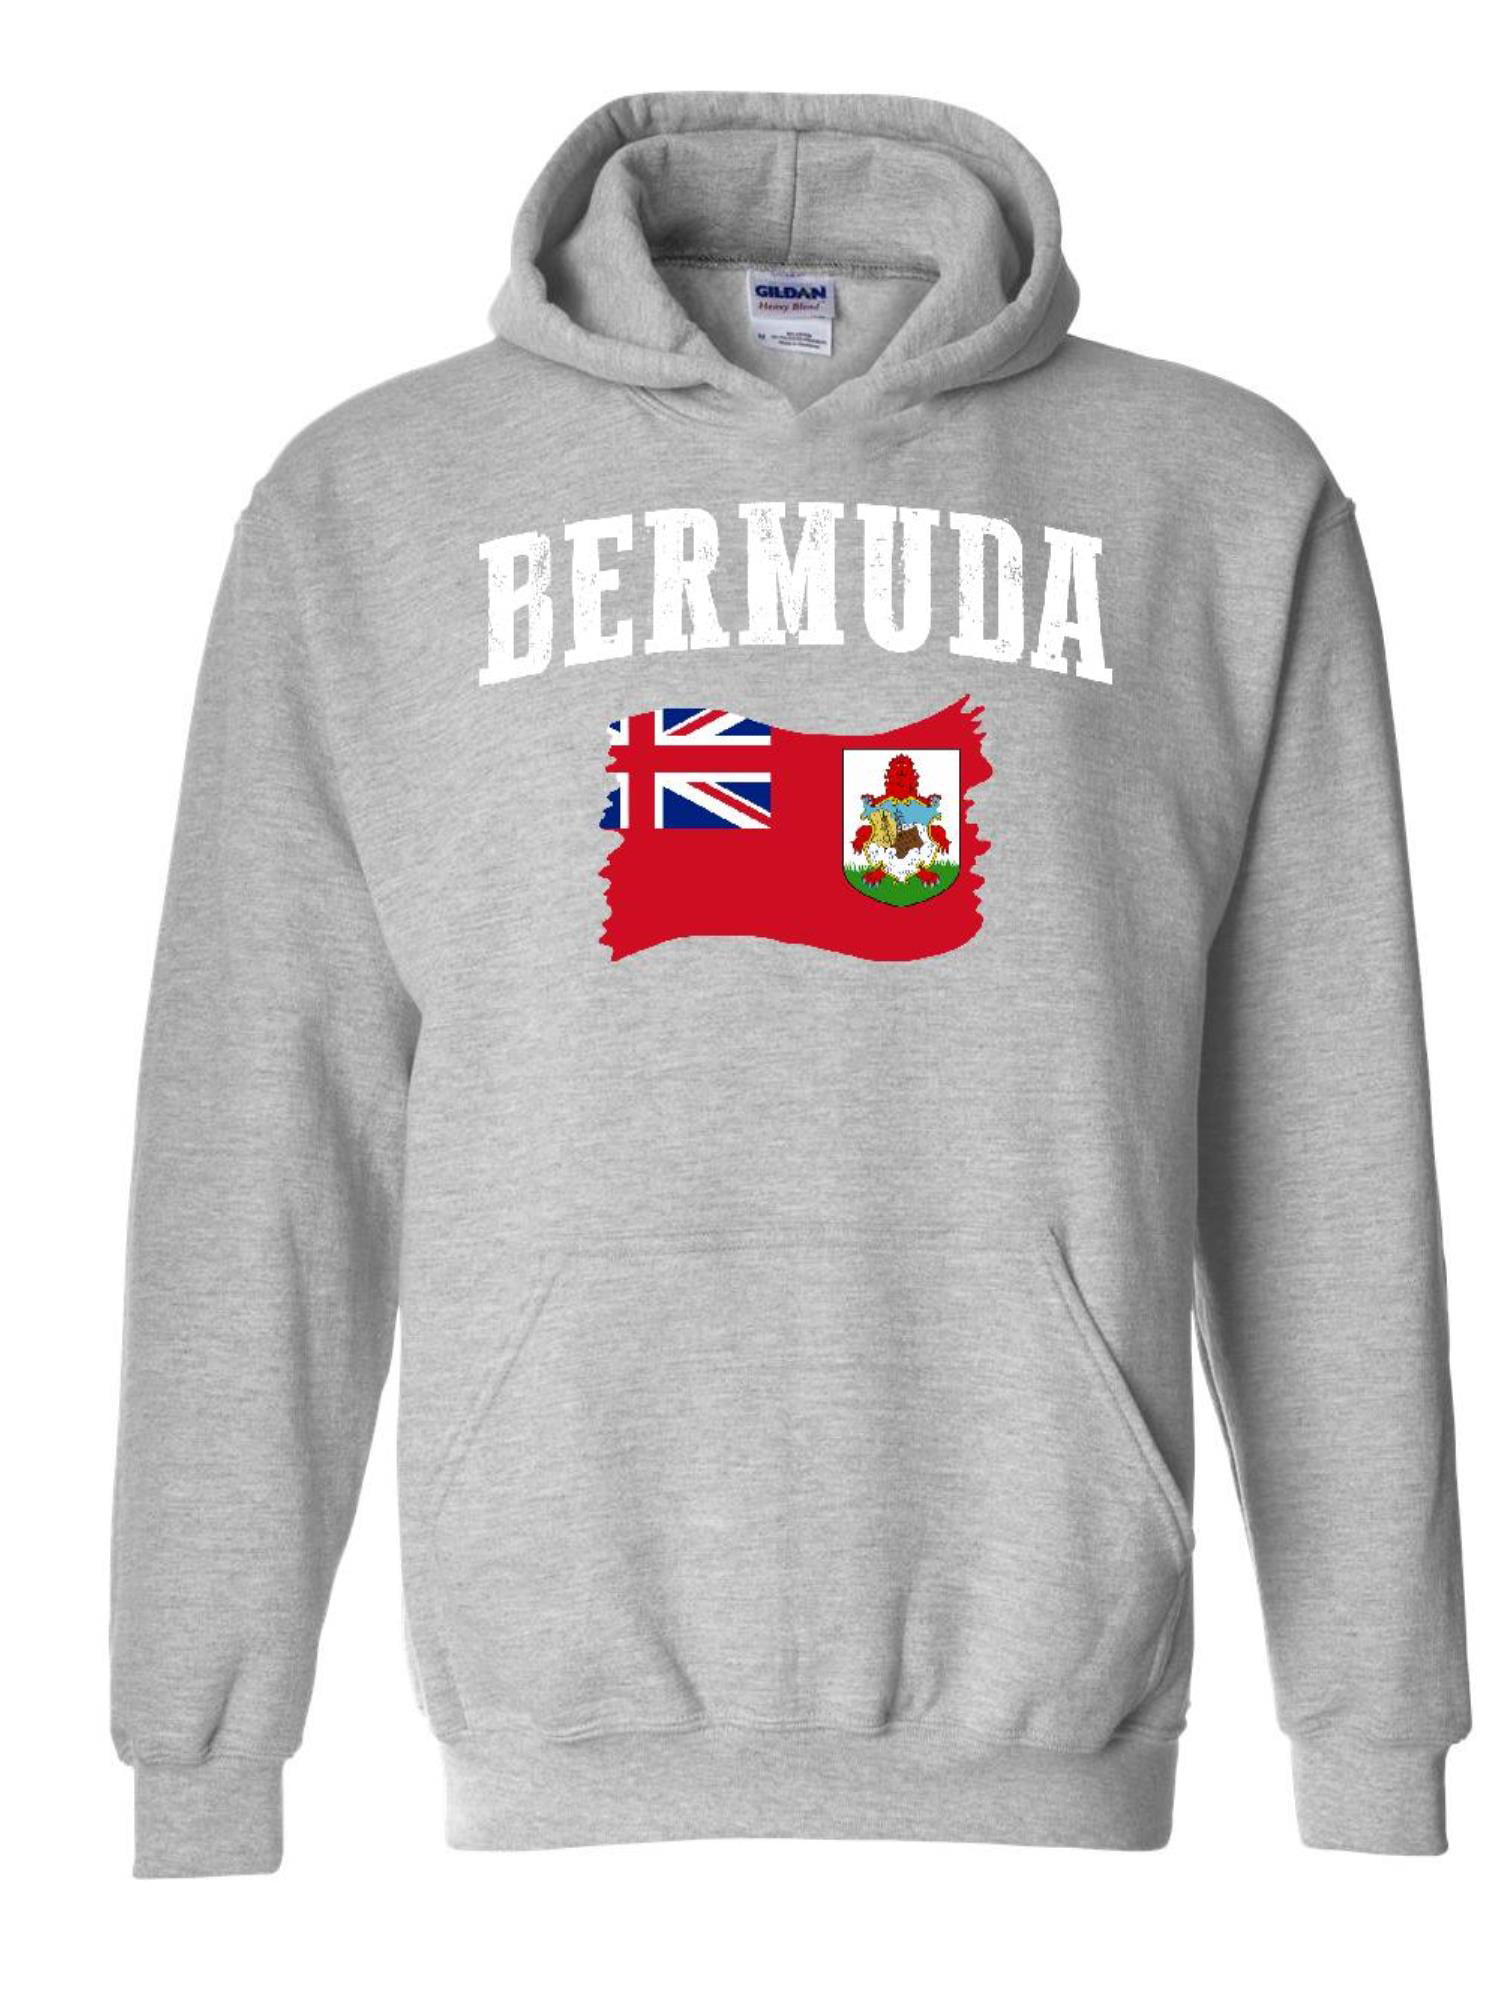 Normal is Boring - Unisex Bermuda Flag Hoodie Sweatshirt - Walmart.com ...